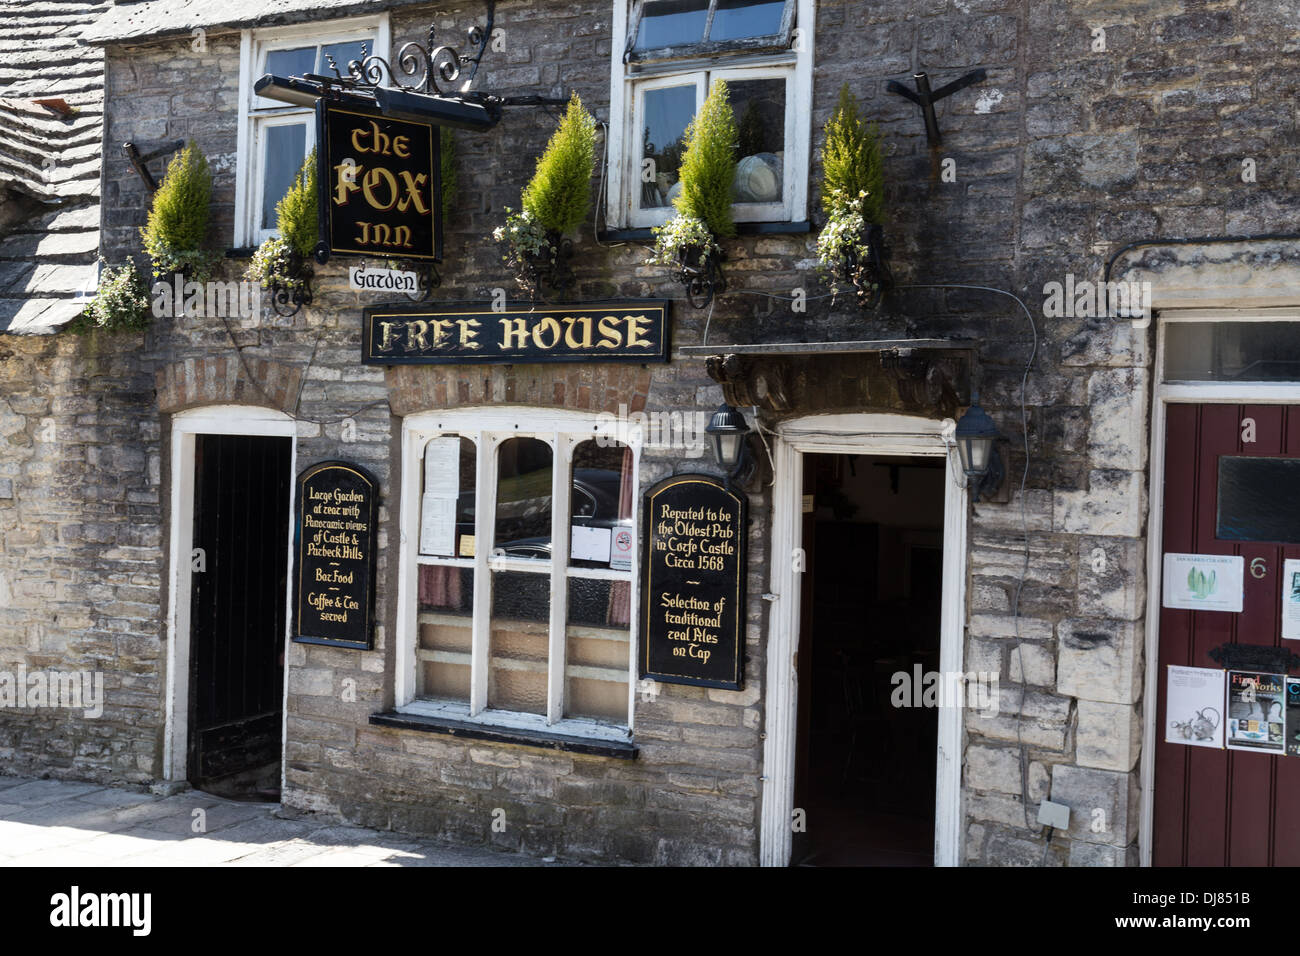 The Fox 14th Century English pub in Corfe Castle village, Dorset. UK. Stock Photo